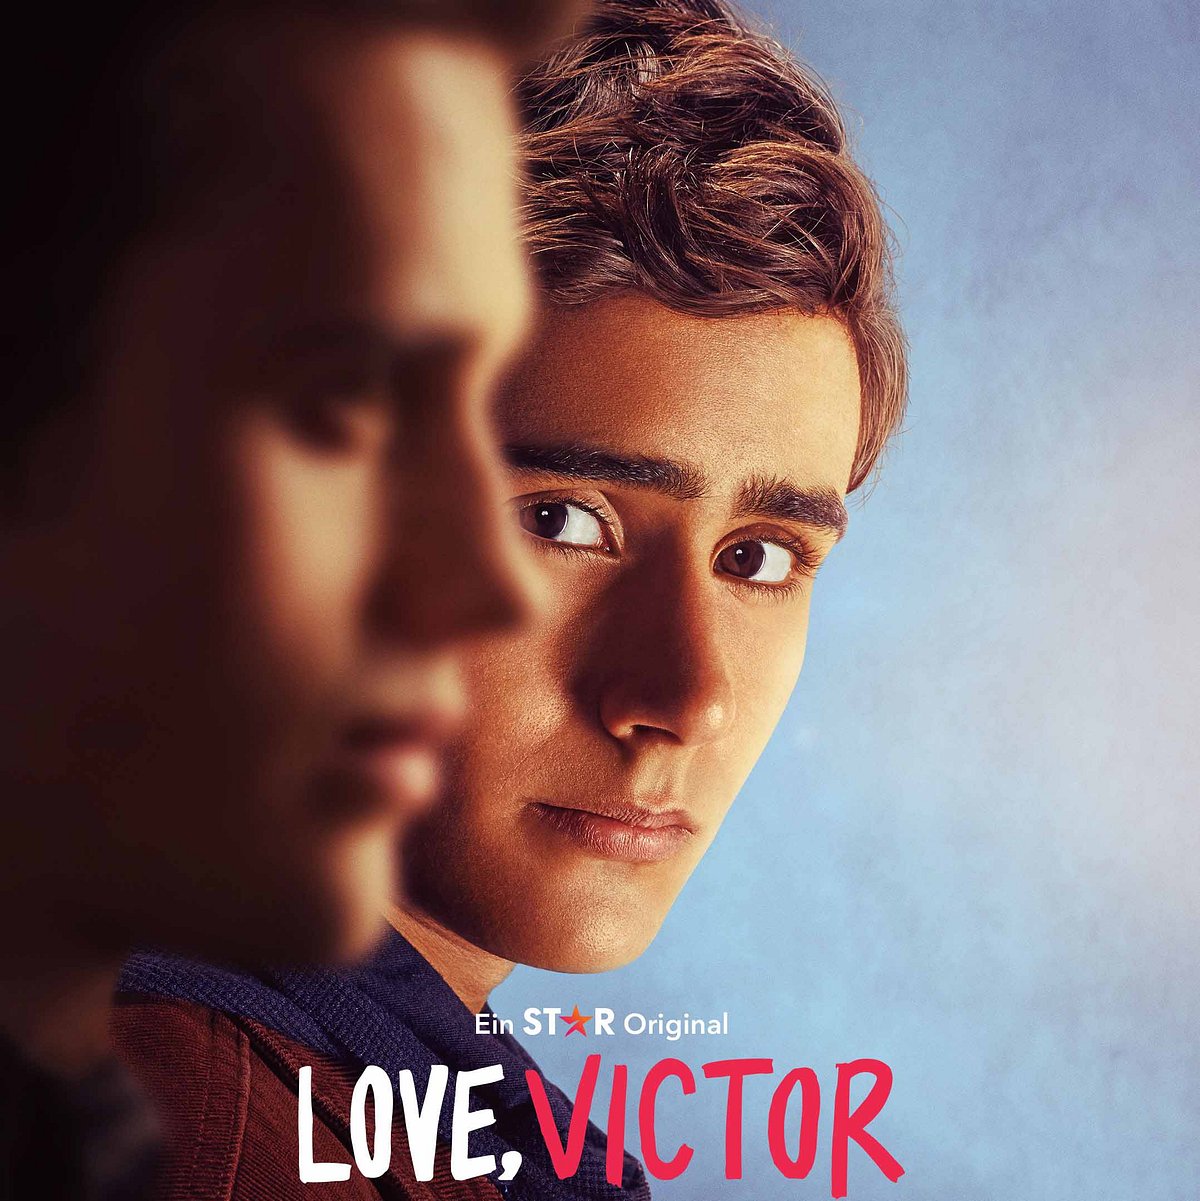 Love, Victor: Das passiert in Staffel 2